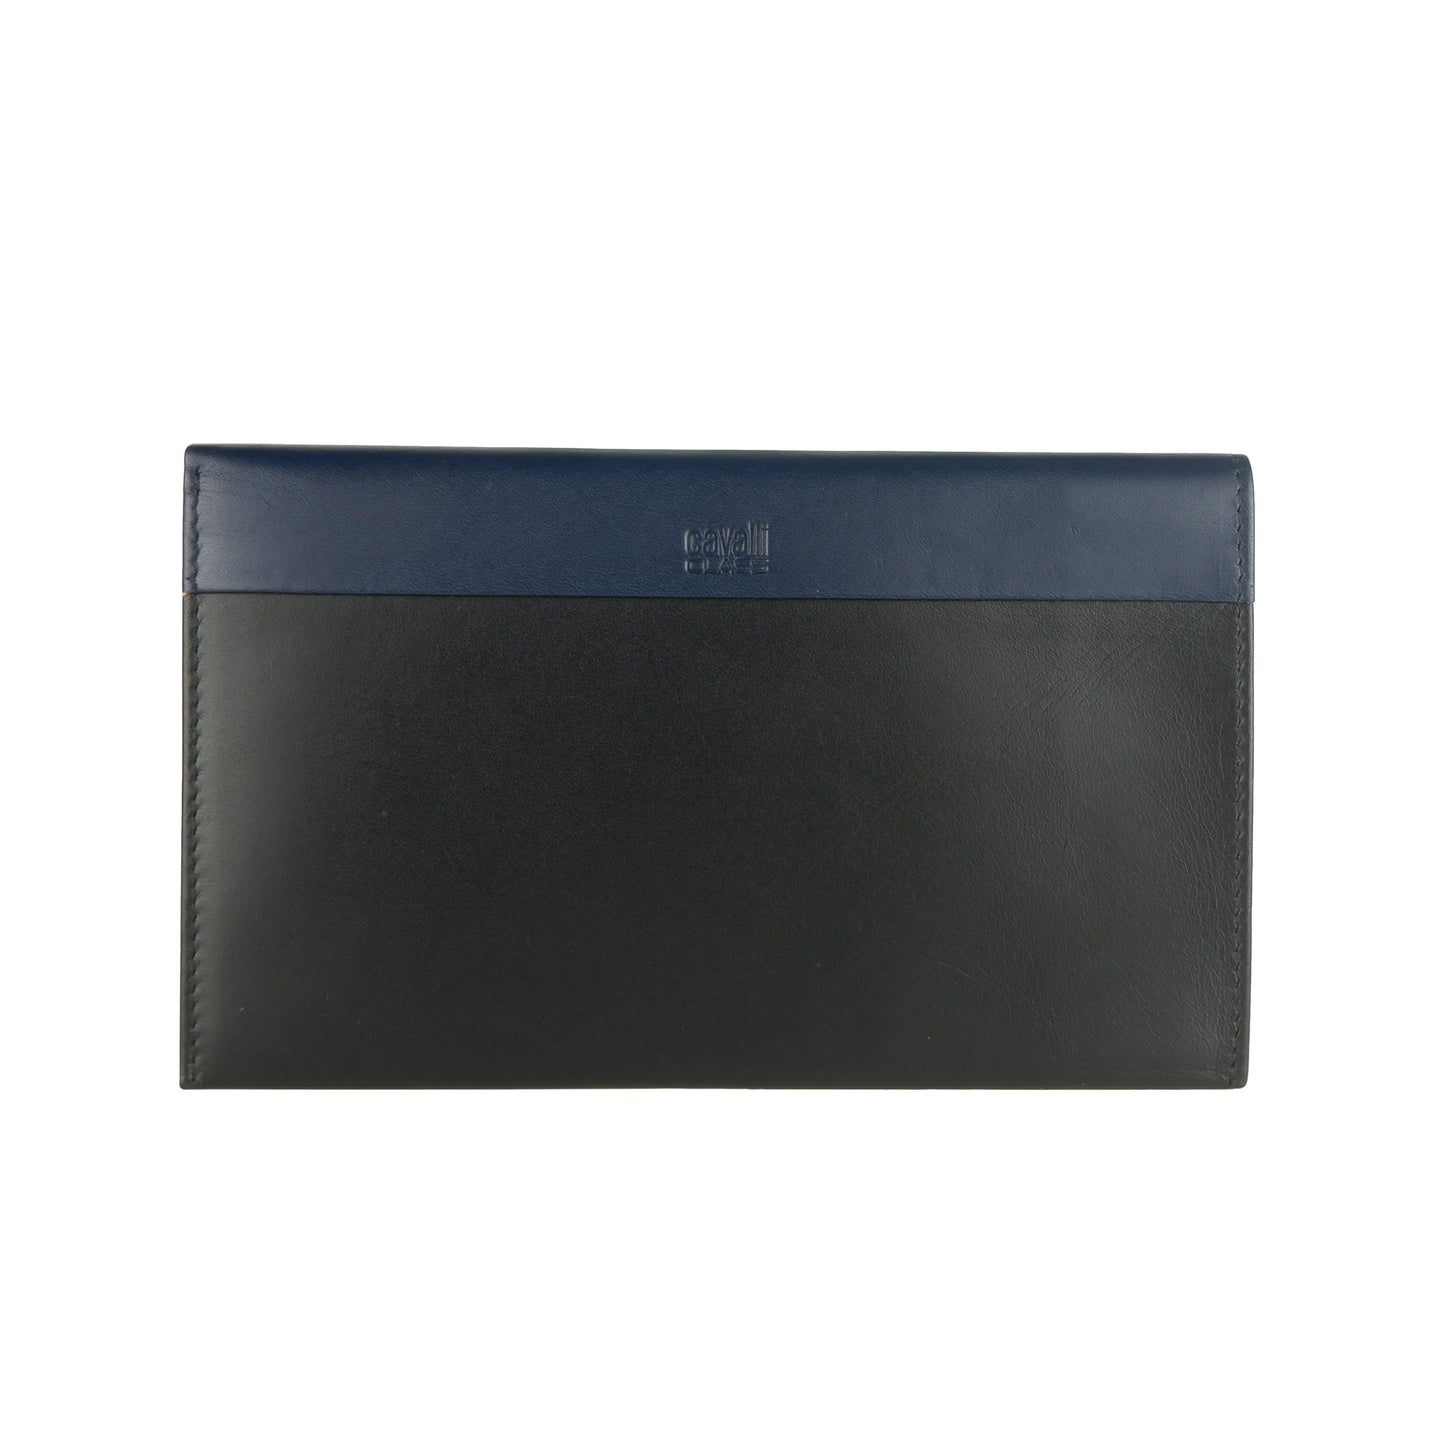 Black Calf Leather Card Holder Wallet